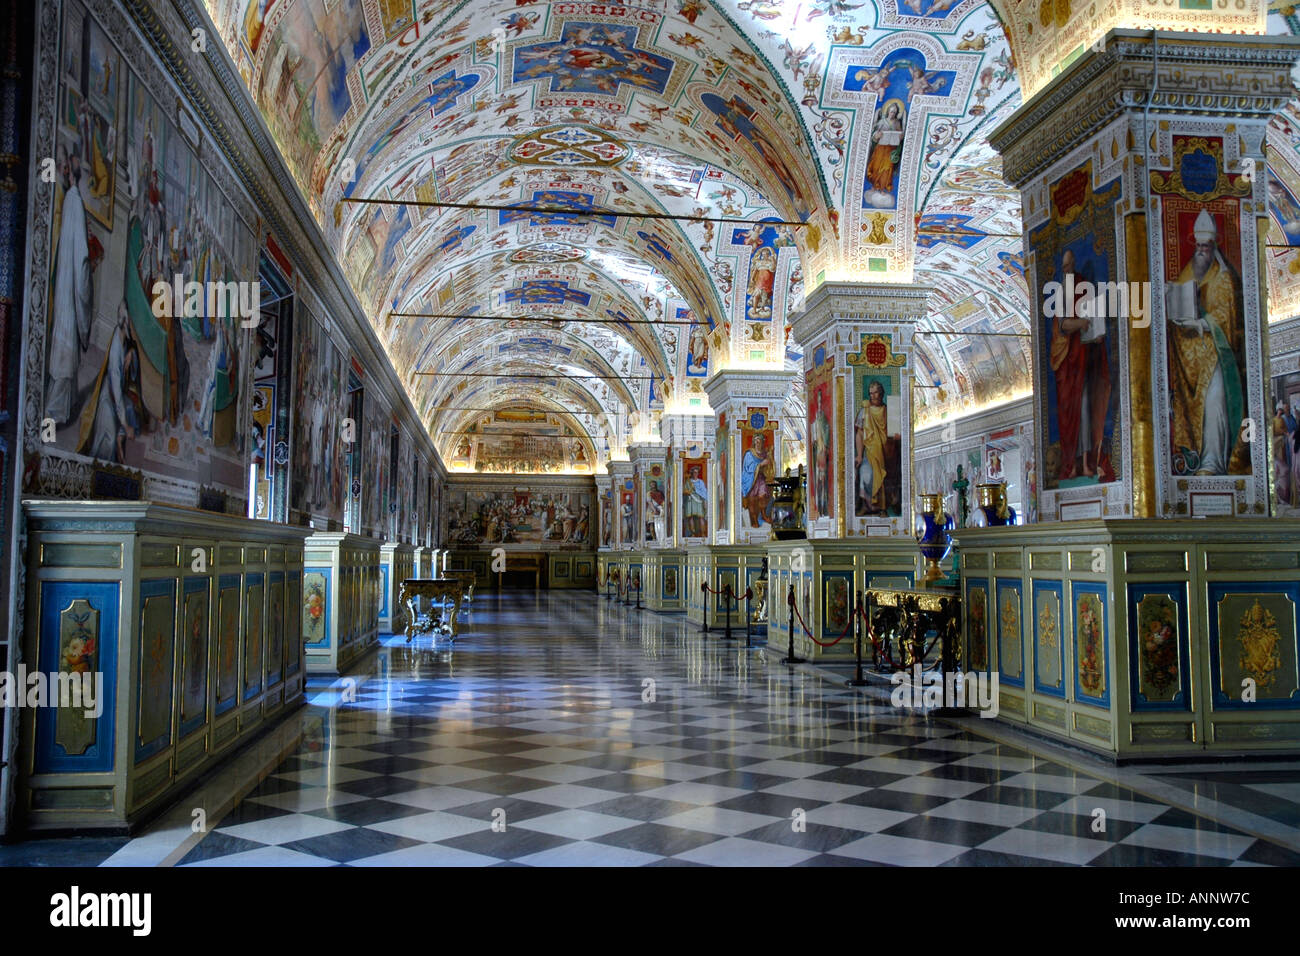 Der Vatikan Fresken Salone Sixtinische für Papst Sixtus v. im 16. Jahrhundert gebaut wurde ursprünglich Lesesaal der Bibliothek Stockfoto